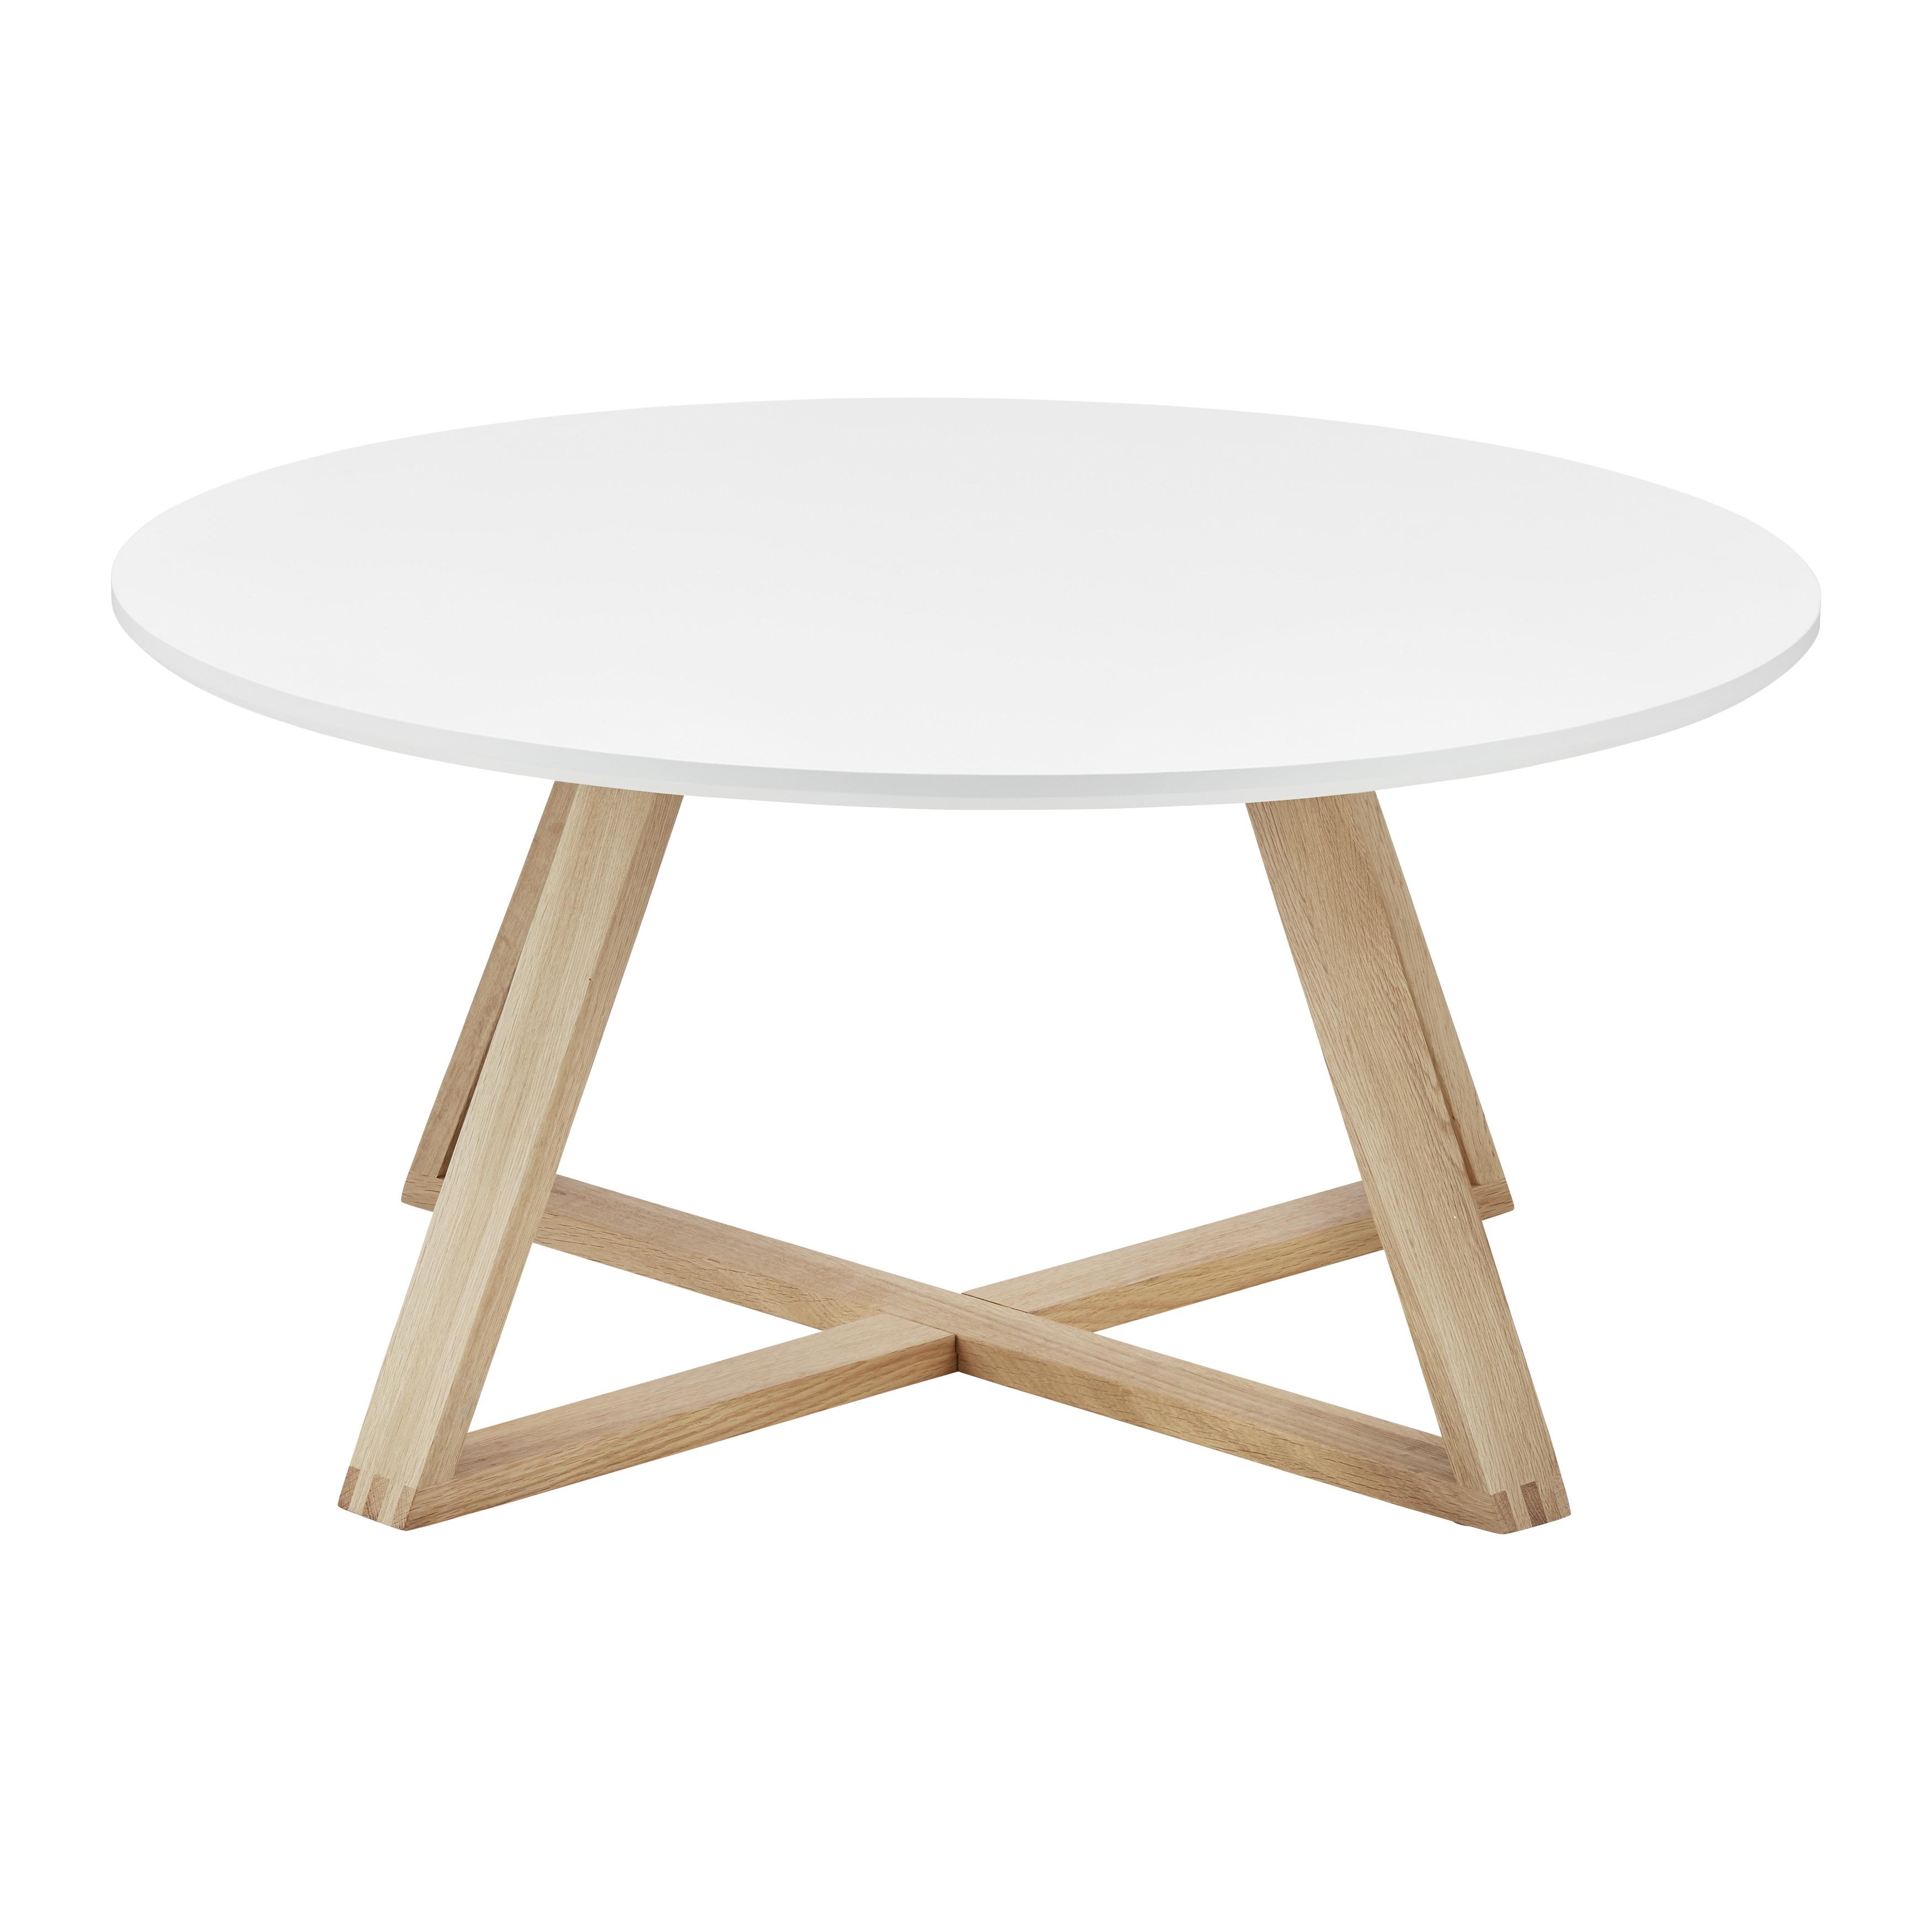 Konferenční Stolek Mattia - bílá/barvy dubu, Moderní, dřevo/kompozitní dřevo (80/80/39cm) - Modern Living